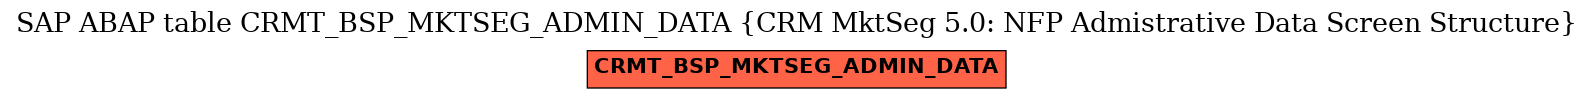 E-R Diagram for table CRMT_BSP_MKTSEG_ADMIN_DATA (CRM MktSeg 5.0: NFP Admistrative Data Screen Structure)